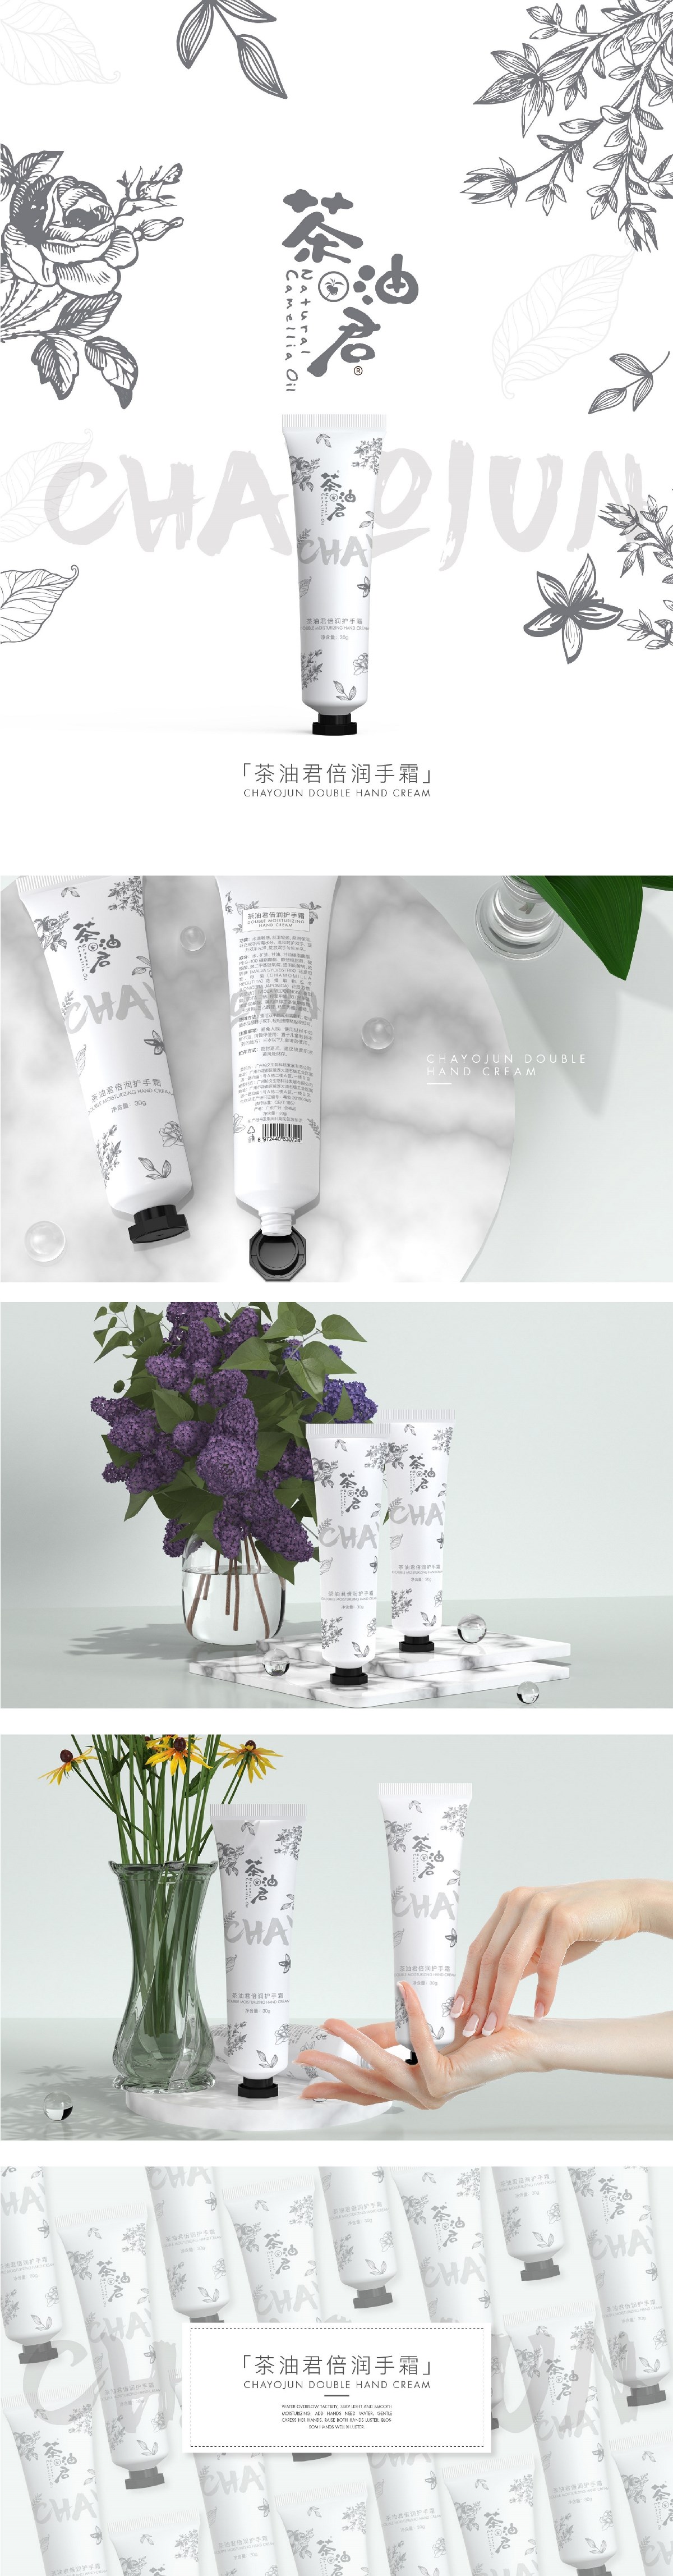 茶油君-植物护手霜装设计分享06 ● 从不营销